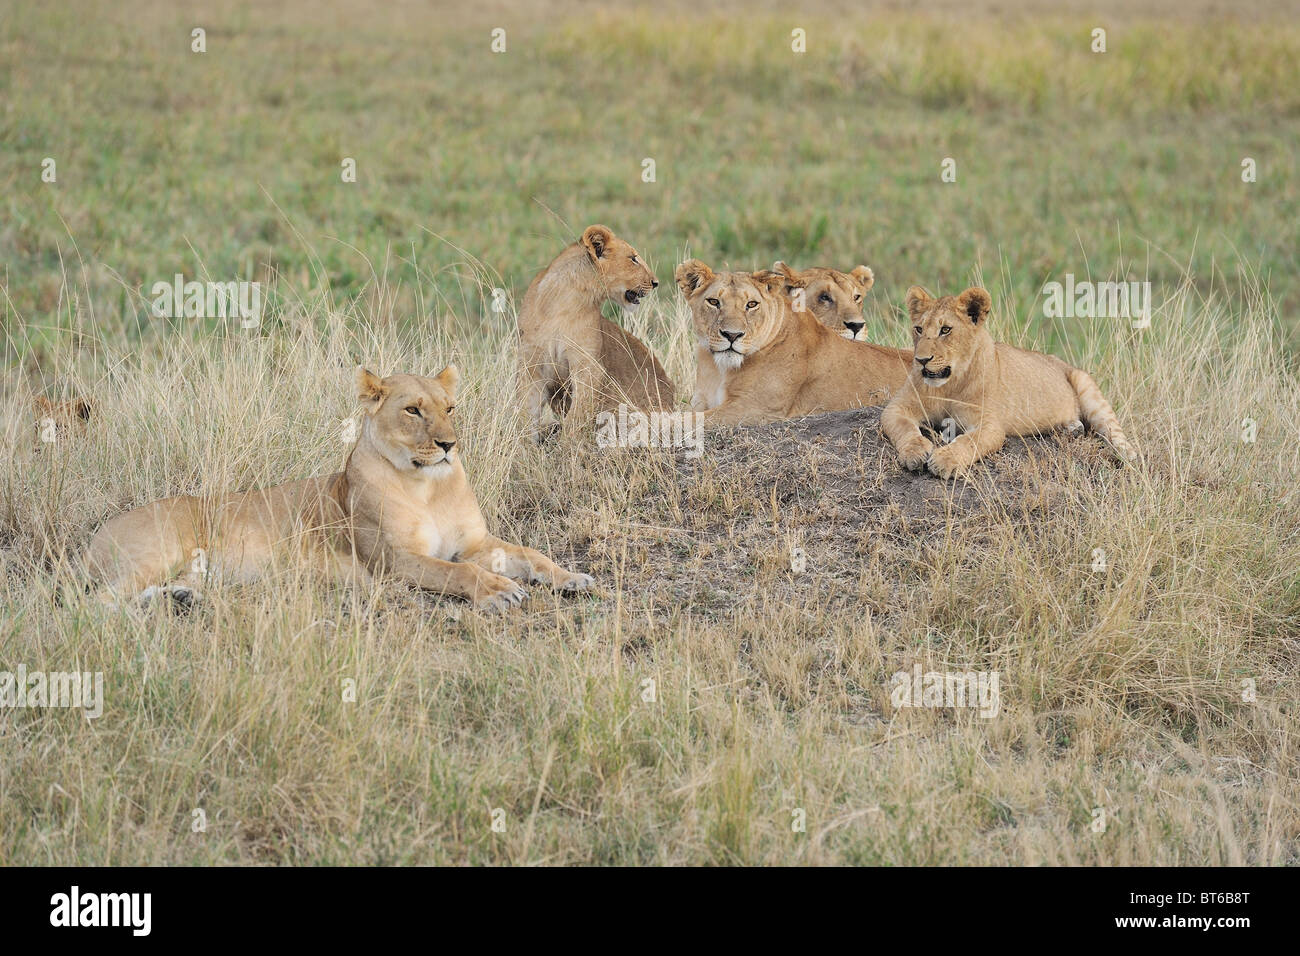 East African Lion - Massai lion (Panthera leo nubica) groupe de femelles et leurs petits reposant sur le sol Banque D'Images